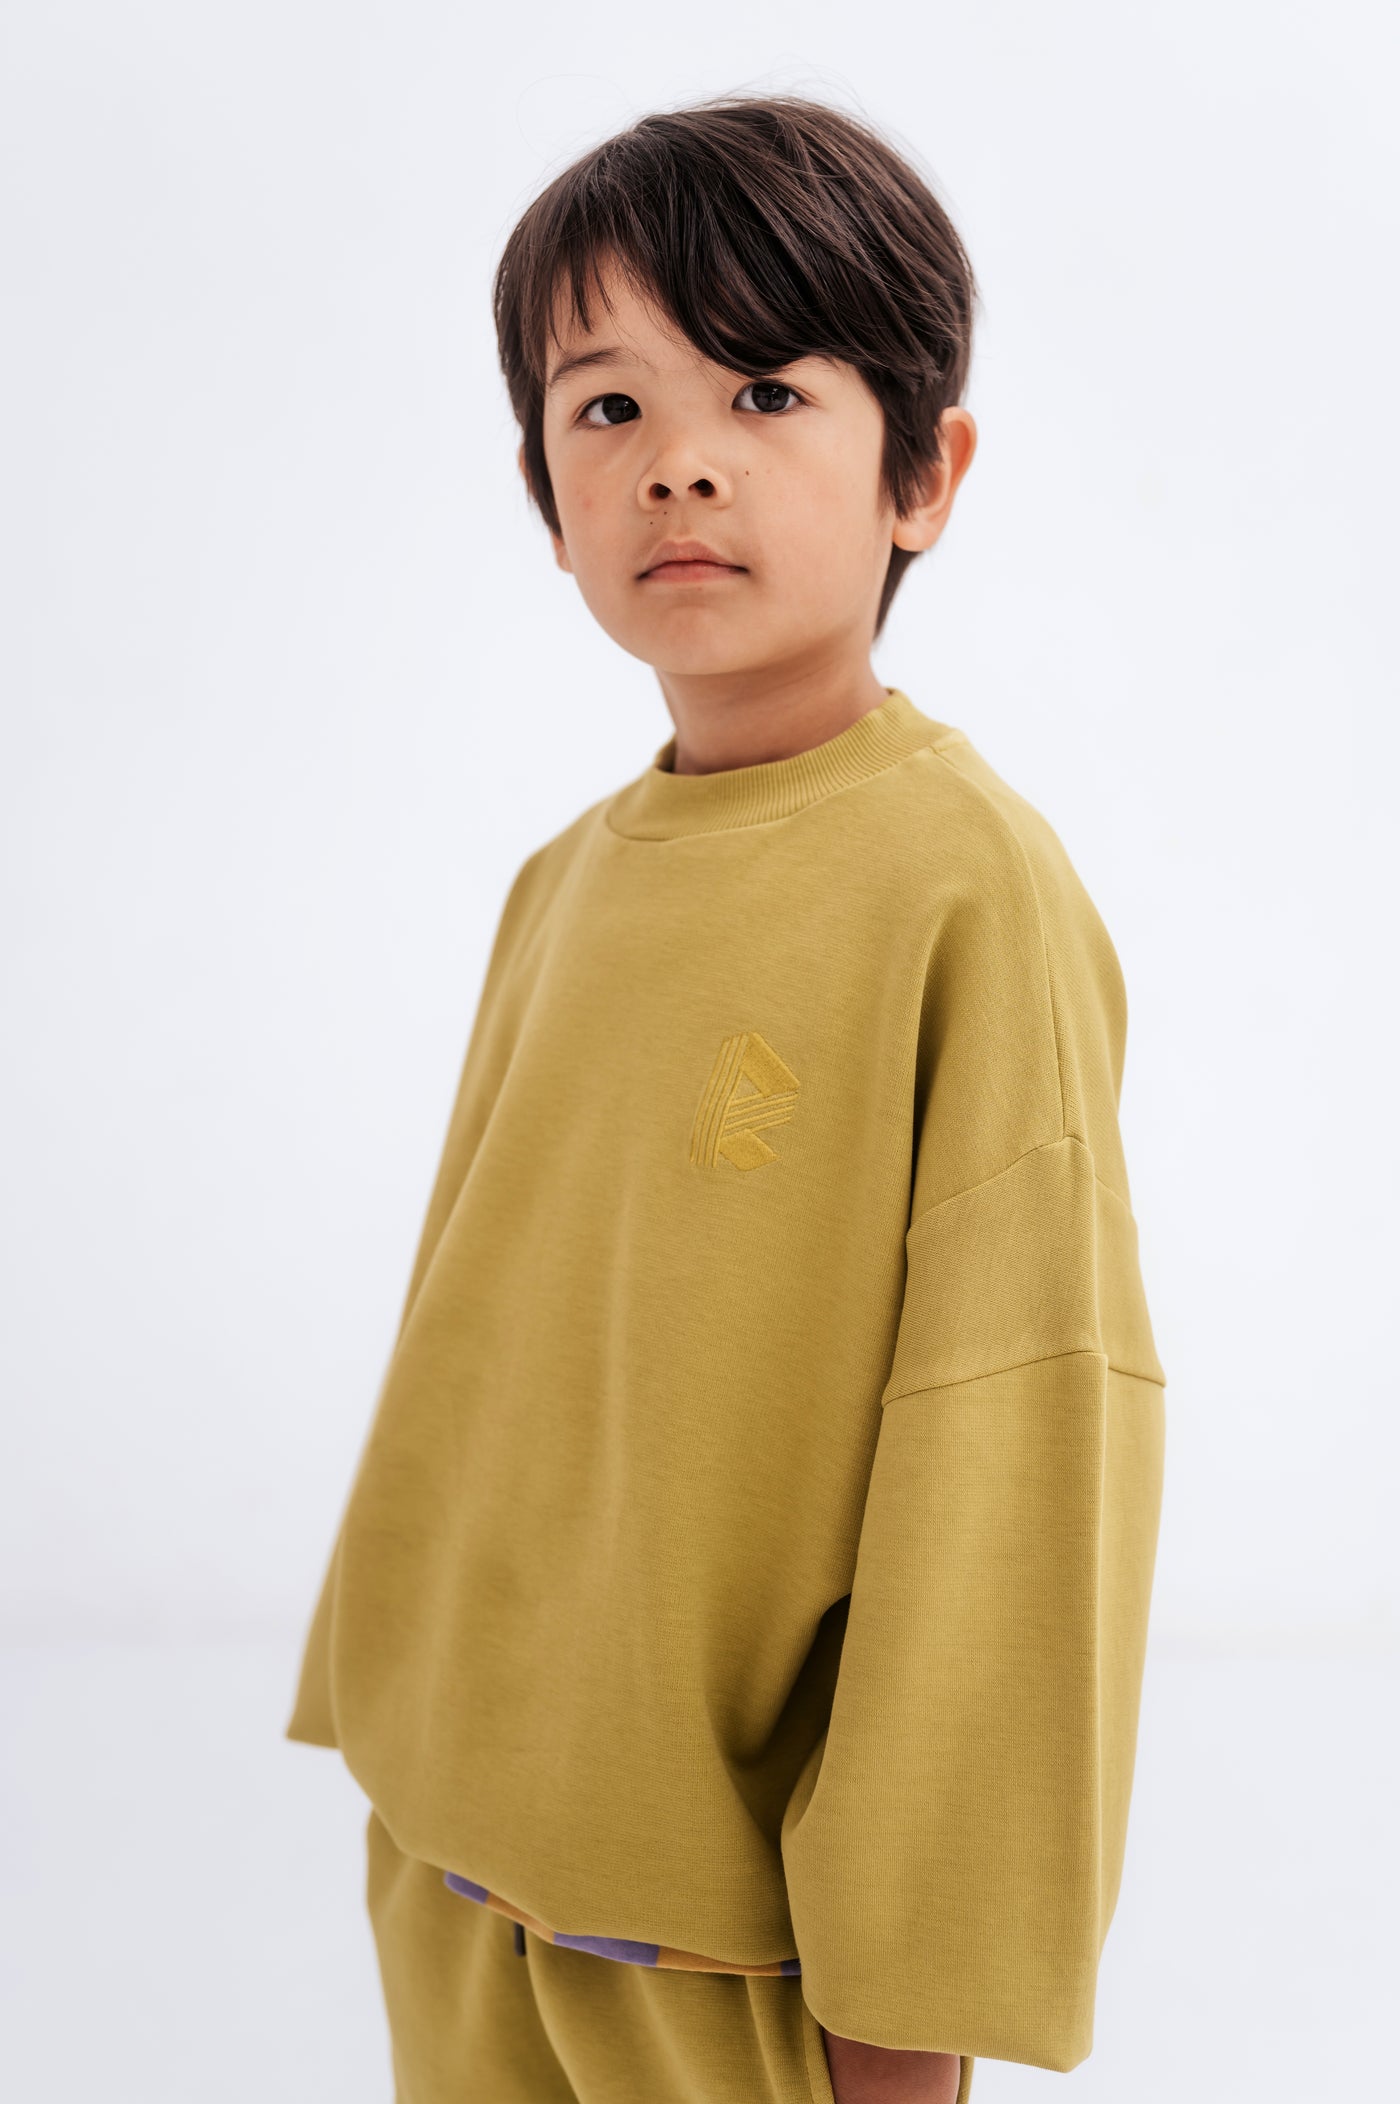 crewneck sweater - golden green